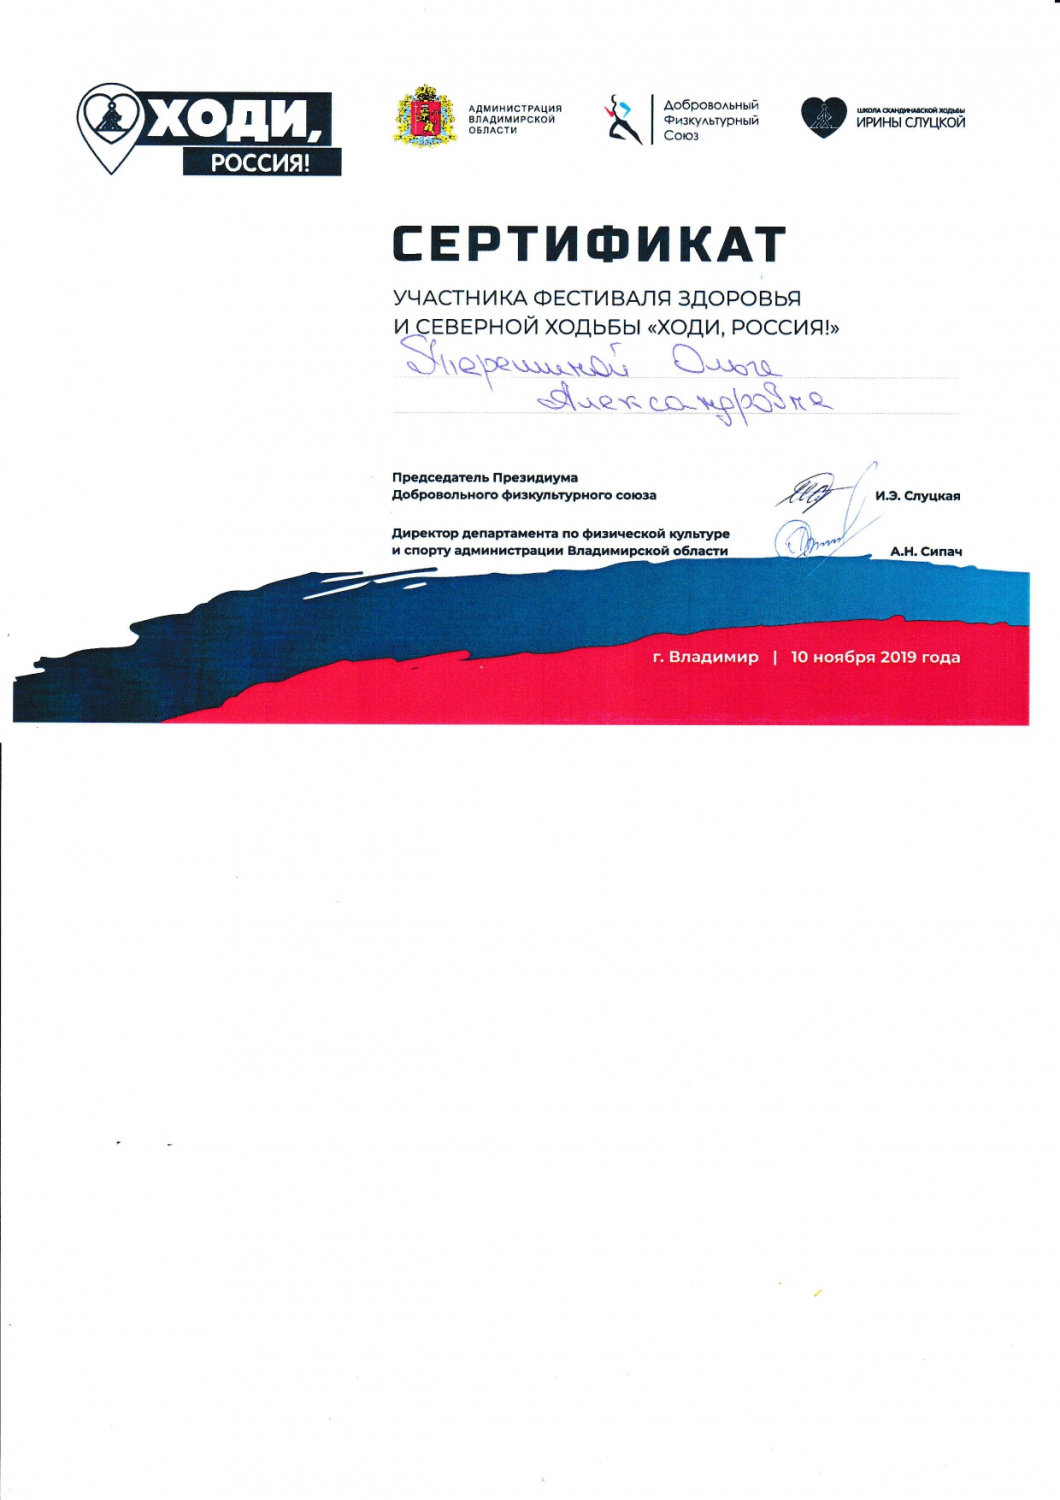 сертификат2_page-0001.jpg